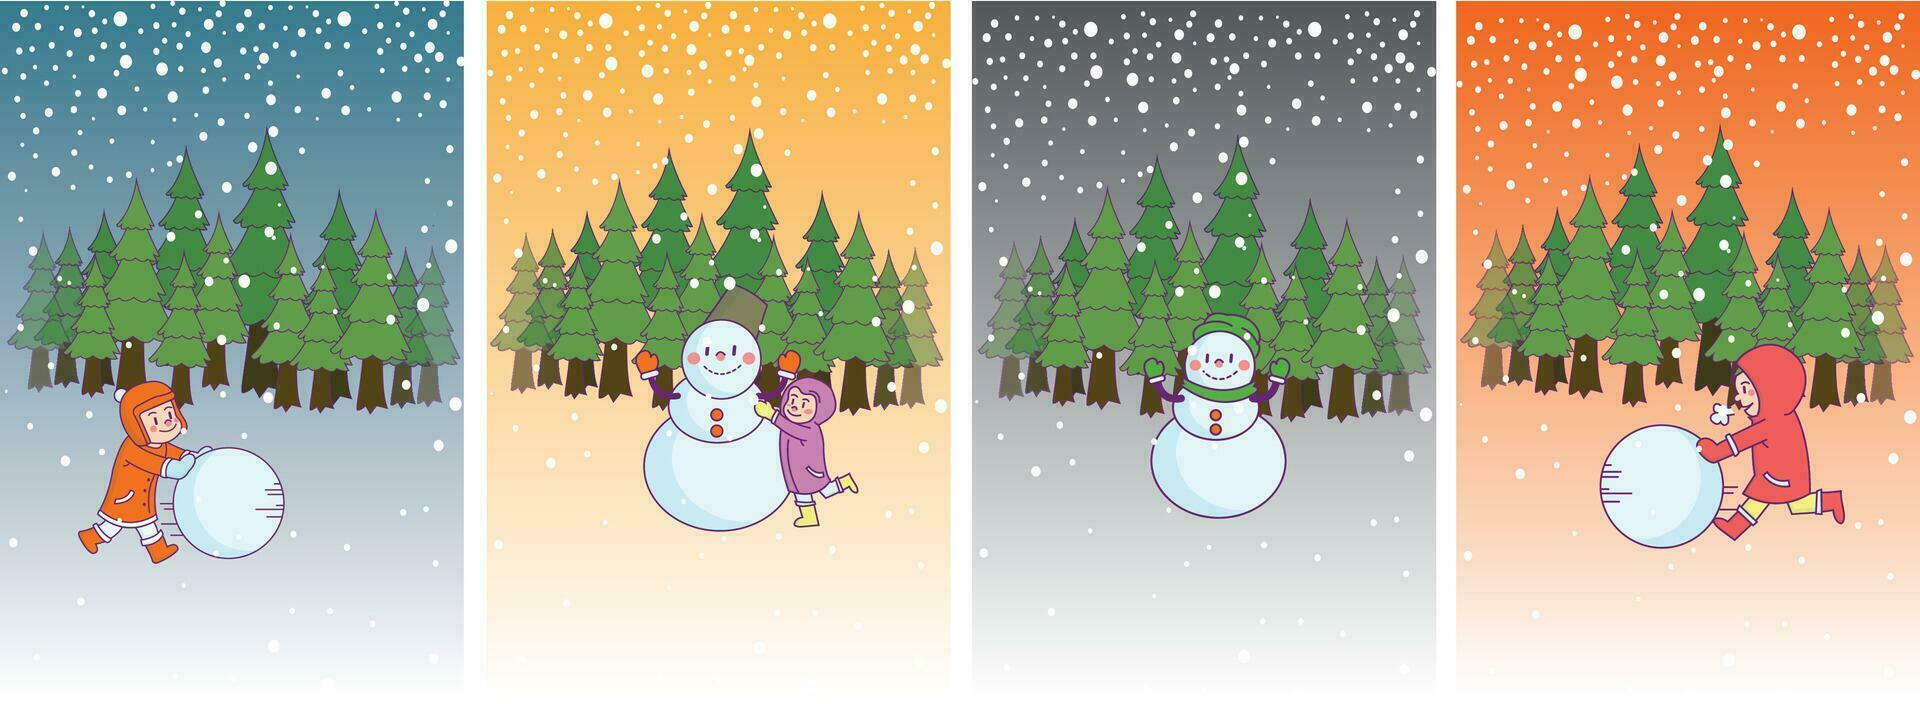 Weihnachten und Winter Tag Banner, Kiefer Wald Landschaft, Schnee, Schneemann, Schneebälle und Kinder spielen, Winter Urlaub. Papier Illustration vektor